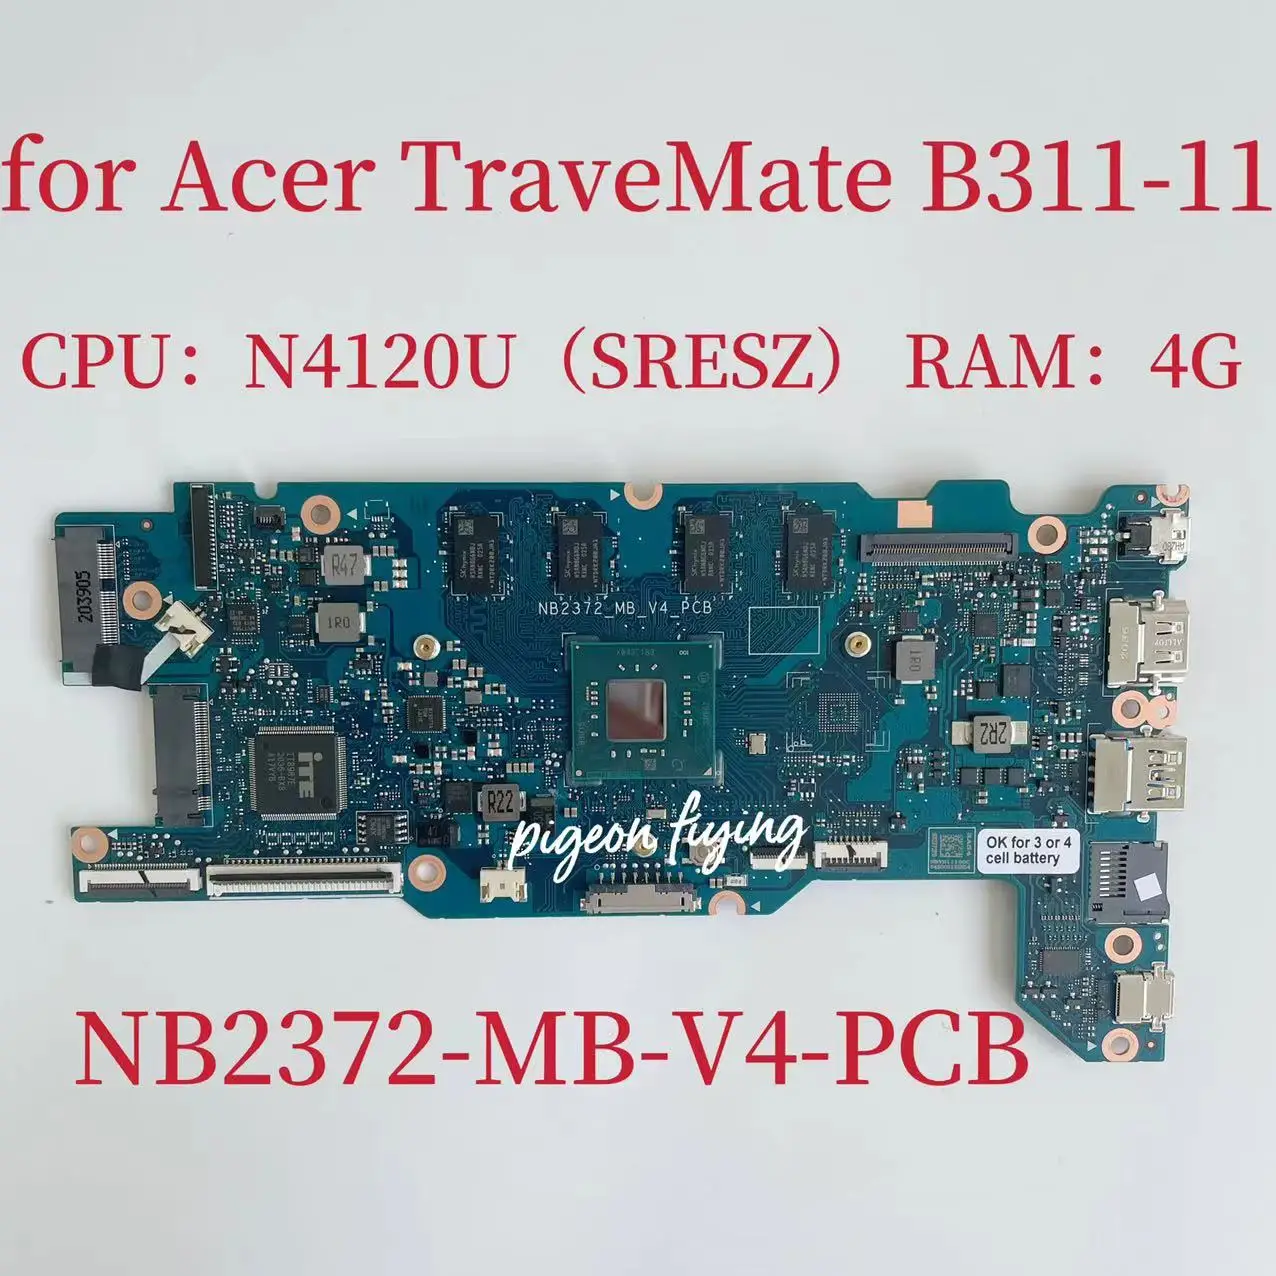 NB2372-MB-V4-PCB    ACER TraveMate B311-11     CPU:N4210U SRESZ 4  RAM NBVN11100C 100%  